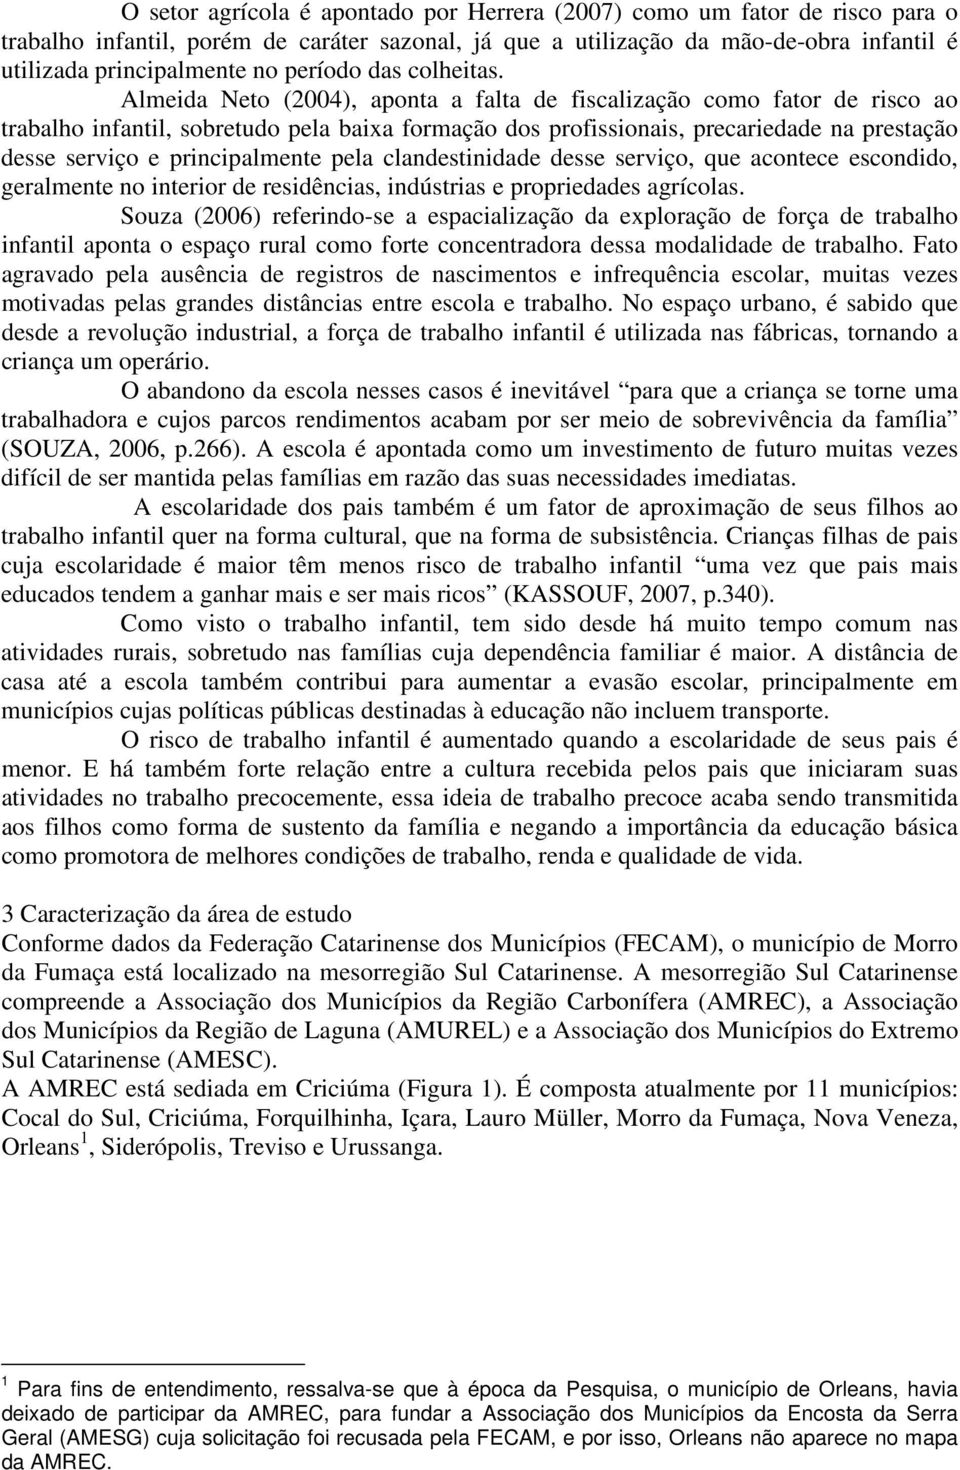 Almeida Neto (2004), aponta a falta de fiscalização como fator de risco ao trabalho infantil, sobretudo pela baixa formação dos profissionais, precariedade na prestação desse serviço e principalmente